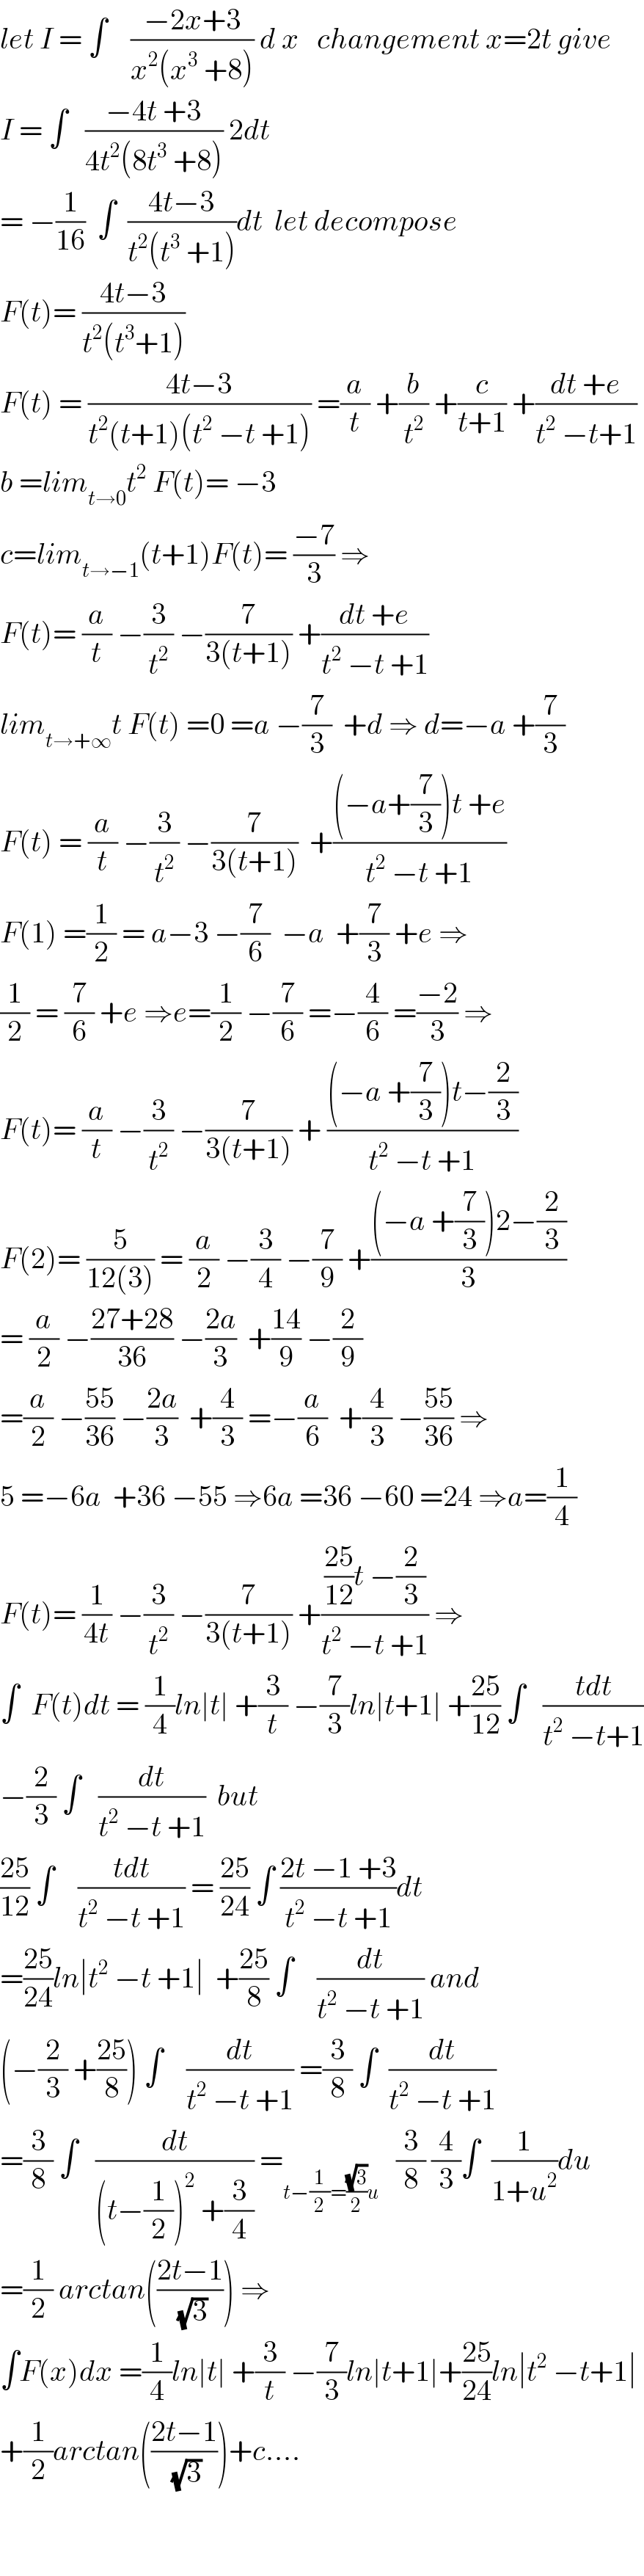 let I = ∫    ((−2x+3)/(x^2 (x^3  +8))) d x   changement x=2t give  I = ∫   ((−4t +3)/(4t^2 (8t^3  +8))) 2dt  = −(1/(16))  ∫  ((4t−3)/(t^2 (t^3  +1)))dt  let decompose  F(t)= ((4t−3)/(t^2 (t^3 +1)))  F(t) = ((4t−3)/(t^2 (t+1)(t^2  −t +1))) =(a/t) +(b/t^2 ) +(c/(t+1)) +((dt +e)/(t^2  −t+1))  b =lim_(t→0) t^2  F(t)= −3  c=lim_(t→−1) (t+1)F(t)= ((−7)/3) ⇒  F(t)= (a/t) −(3/t^2 ) −(7/(3(t+1))) +((dt +e)/(t^2  −t +1))  lim_(t→+∞) t F(t) =0 =a −(7/3)  +d ⇒ d=−a +(7/3)  F(t) = (a/t) −(3/t^2 ) −(7/(3(t+1)))  +(((−a+(7/3))t +e)/(t^2  −t +1))  F(1) =(1/2) = a−3 −(7/6)  −a  +(7/3) +e ⇒  (1/2) = (7/6) +e ⇒e=(1/2) −(7/6) =−(4/6) =((−2)/3) ⇒  F(t)= (a/t) −(3/t^2 ) −(7/(3(t+1))) + (((−a +(7/3))t−(2/3))/(t^2  −t +1))  F(2)= (5/(12(3))) = (a/2) −(3/4) −(7/9) +(((−a +(7/3))2−(2/3))/3)  = (a/2) −((27+28)/(36)) −((2a)/3)  +((14)/9) −(2/9)  =(a/2) −((55)/(36)) −((2a)/3)  +(4/3) =−(a/6)  +(4/3) −((55)/(36)) ⇒  5 =−6a  +36 −55 ⇒6a =36 −60 =24 ⇒a=(1/4)  F(t)= (1/(4t)) −(3/t^2 ) −(7/(3(t+1))) +((((25)/(12))t −(2/3))/(t^2  −t +1)) ⇒  ∫  F(t)dt = (1/4)ln∣t∣ +(3/t) −(7/3)ln∣t+1∣ +((25)/(12)) ∫   ((tdt)/(t^2  −t+1))  −(2/3) ∫   (dt/(t^2  −t +1))  but  ((25)/(12)) ∫    ((tdt)/(t^2  −t +1)) = ((25)/(24)) ∫ ((2t −1 +3)/(t^2  −t +1))dt  =((25)/(24))ln∣t^2  −t +1∣  +((25)/8) ∫    (dt/(t^2  −t +1)) and  (−(2/3) +((25)/8)) ∫    (dt/(t^2  −t +1)) =(3/8) ∫  (dt/(t^2  −t +1))  =(3/8) ∫   (dt/((t−(1/2))^2  +(3/4))) =_(t−(1/2)=((√3)/2)u)    (3/8) (4/3)∫  (1/(1+u^2 ))du  =(1/2) arctan(((2t−1)/(√3))) ⇒  ∫F(x)dx =(1/4)ln∣t∣ +(3/t) −(7/3)ln∣t+1∣+((25)/(24))ln∣t^2  −t+1∣  +(1/2)arctan(((2t−1)/(√3)))+c....      